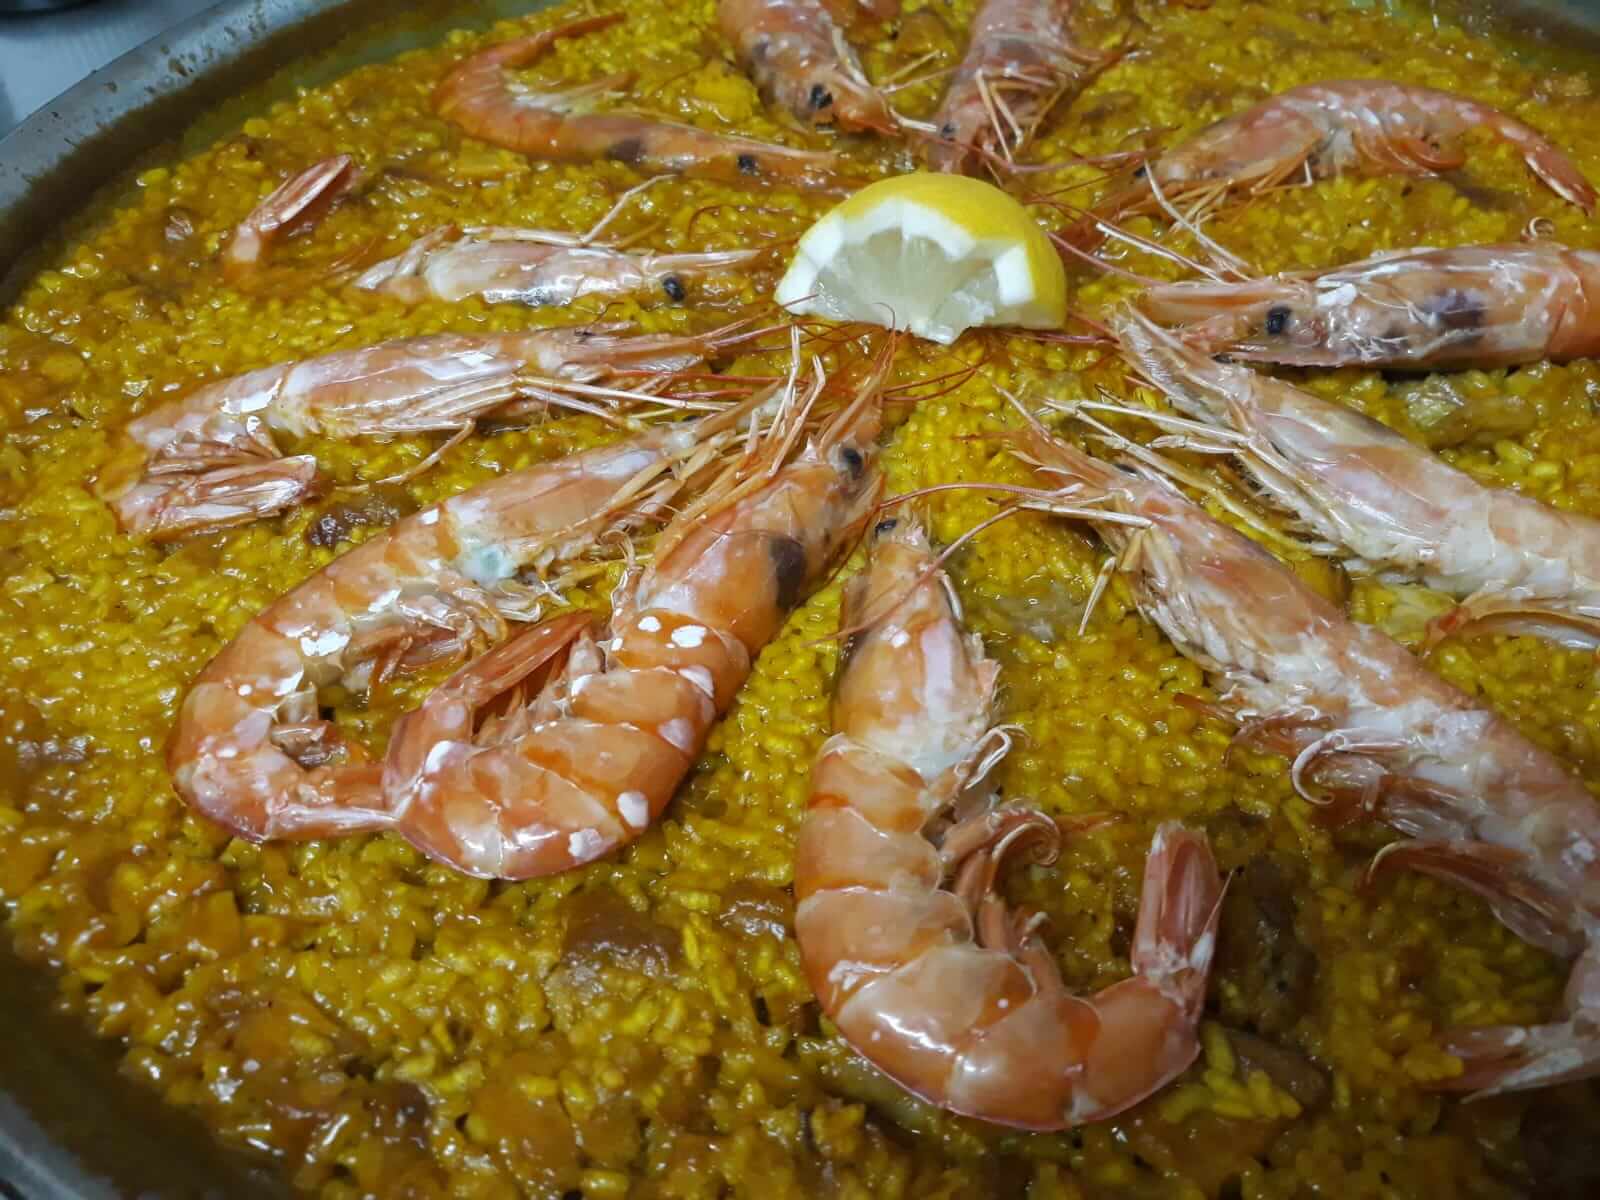 Restaurante especializado en carnes, pescados y verduras a la brasa en el centro de Logroño.            